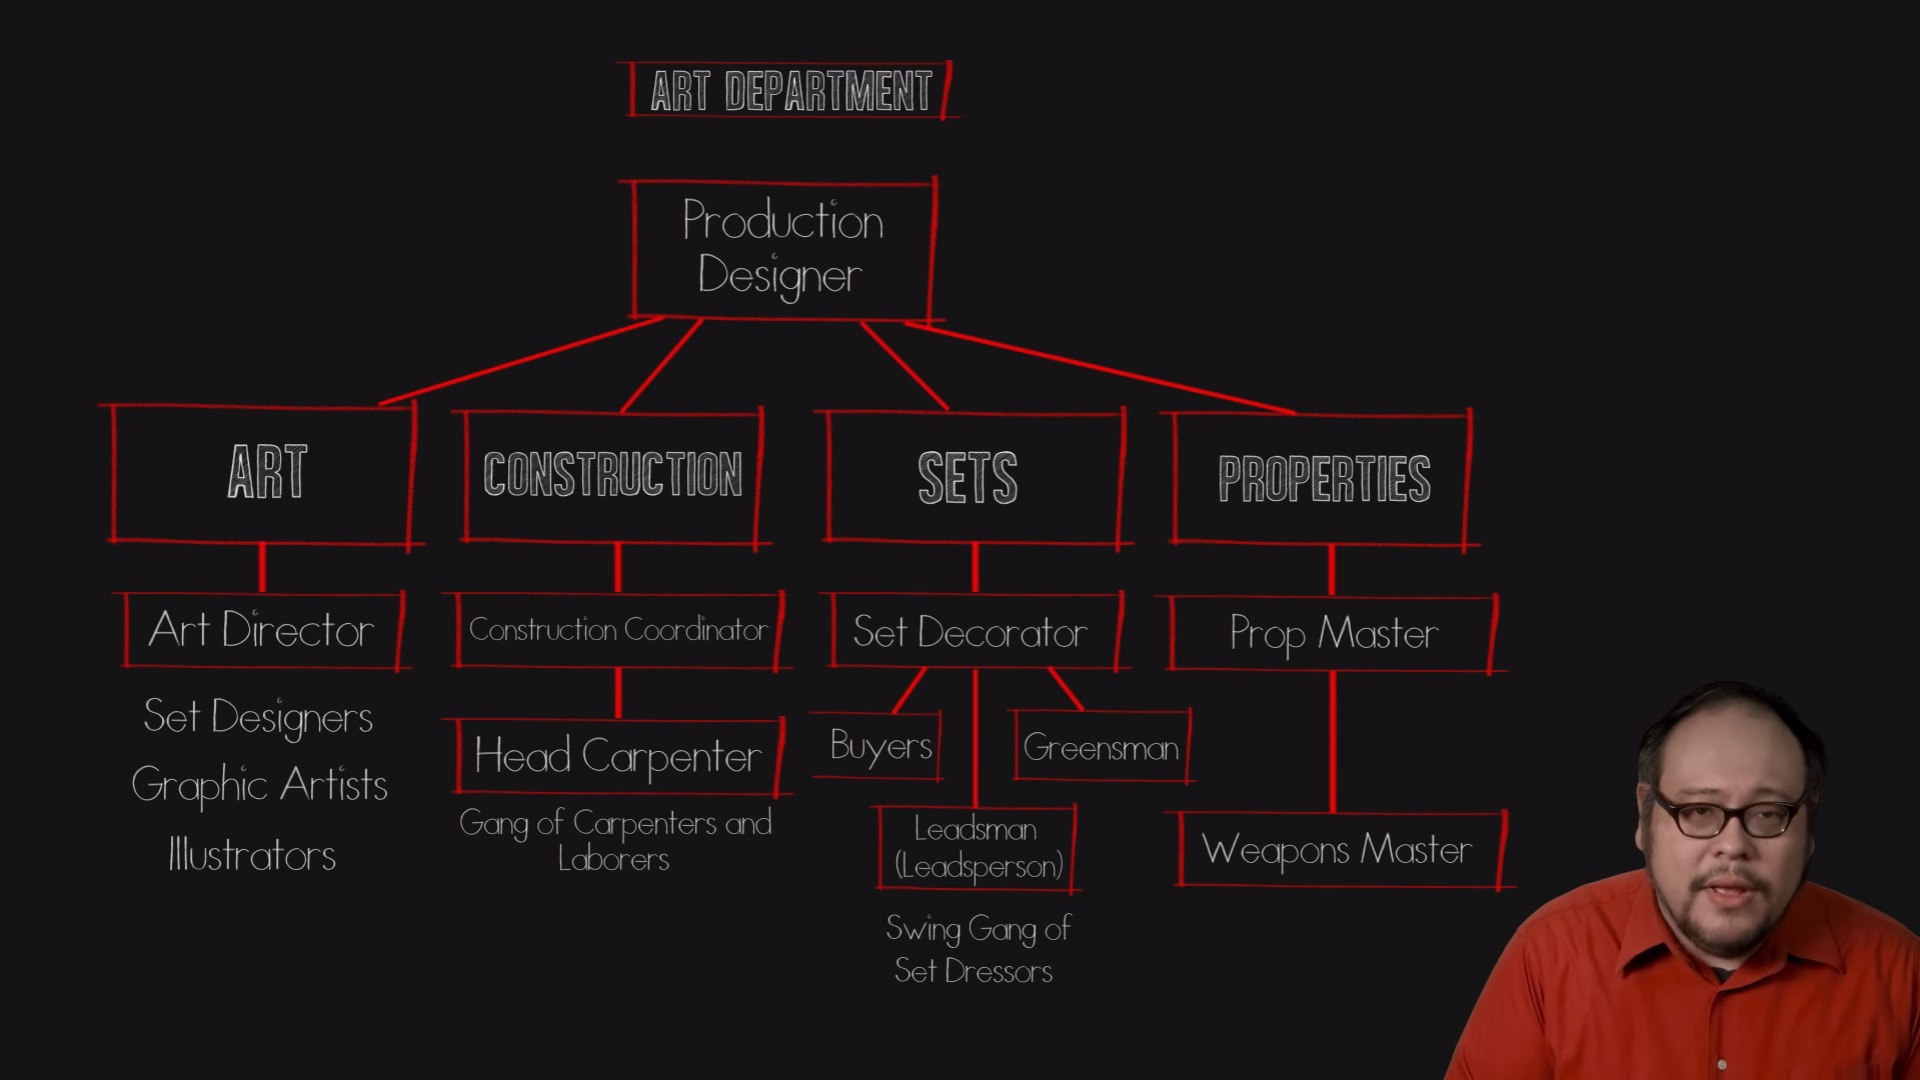 Art Department - Sets - Set Decorater 하위에 있는 Greensman. 출처: Filmmaker IQ 유튜브 채널